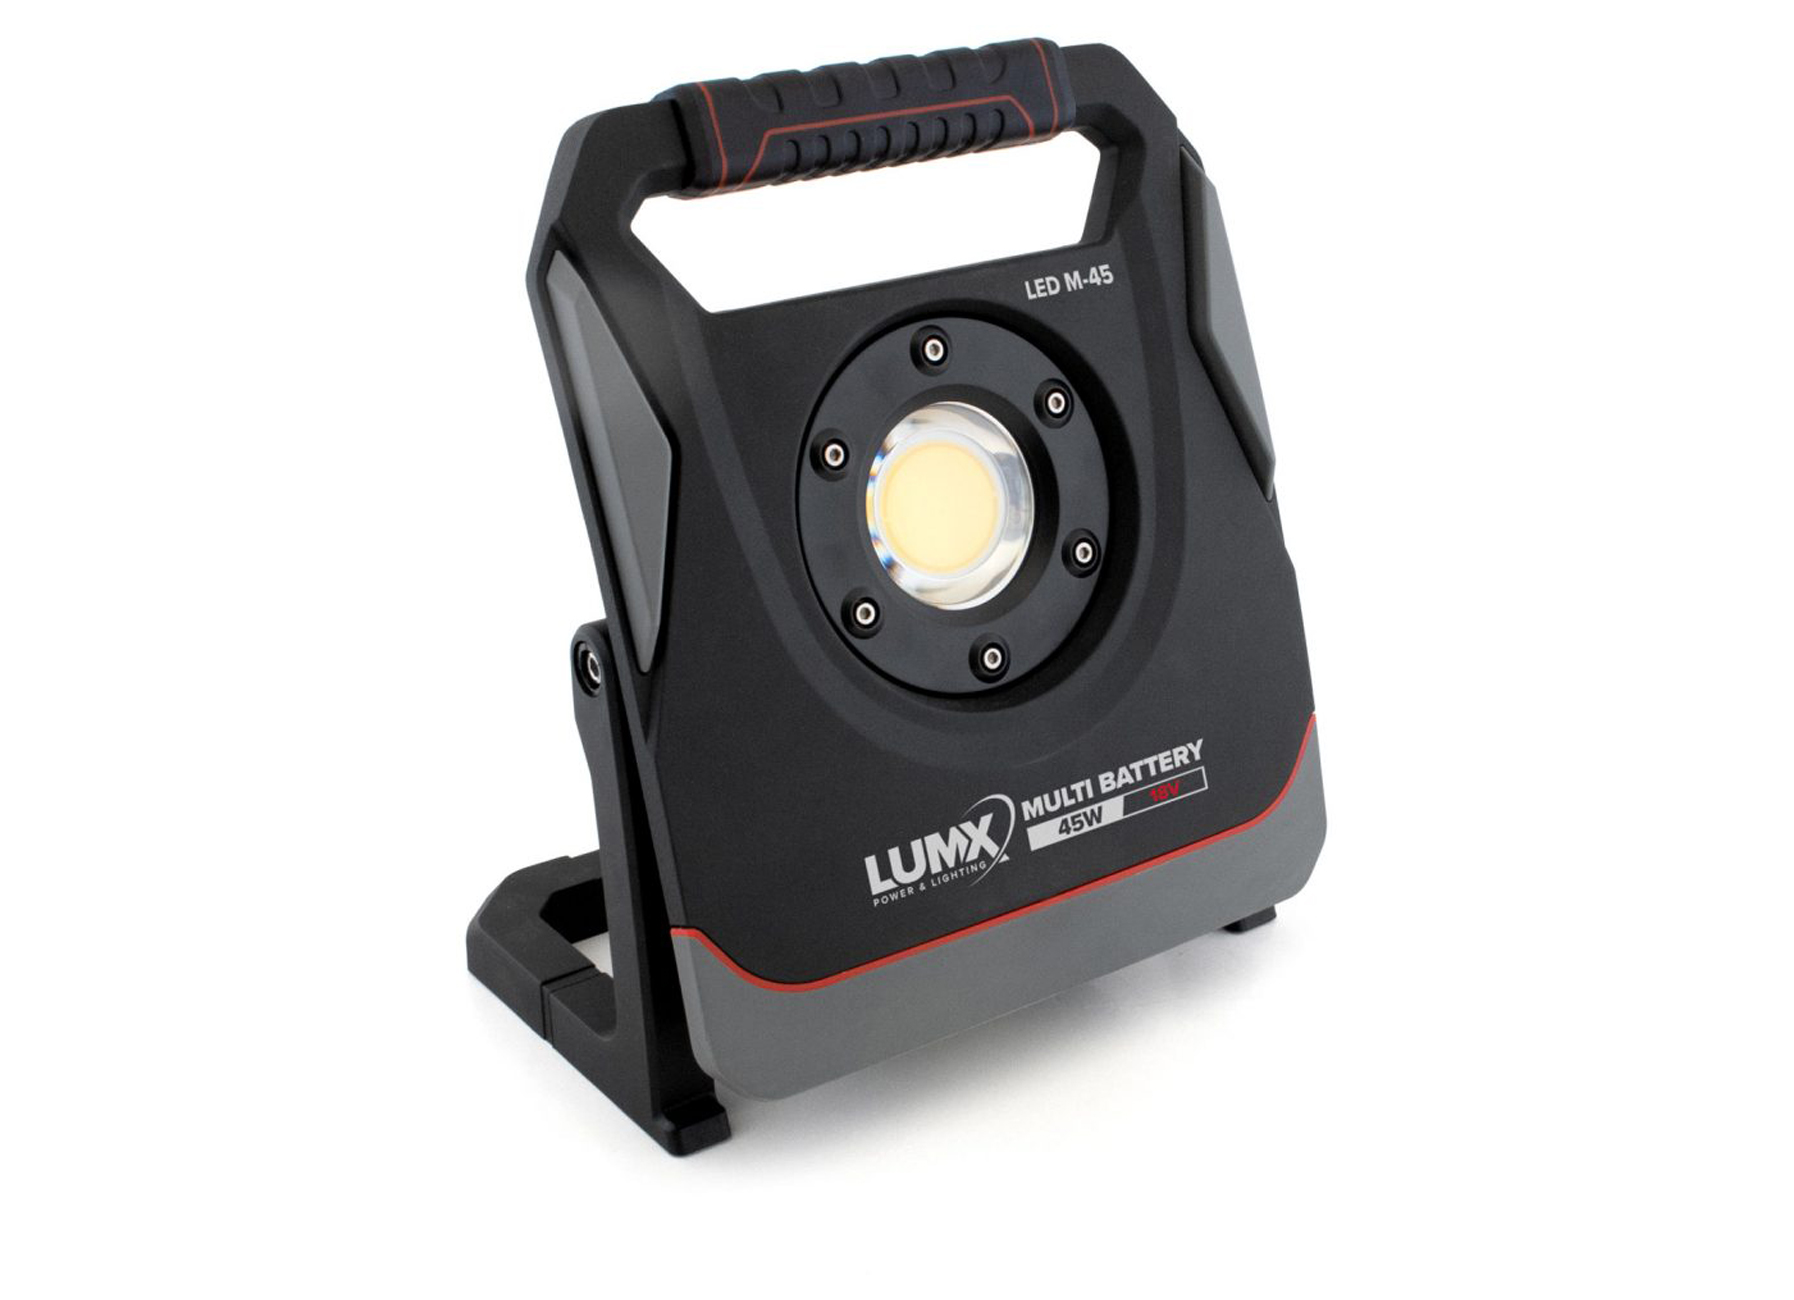 LUMX LED STRALER MULTI-BATTERY M-45 45W IP65